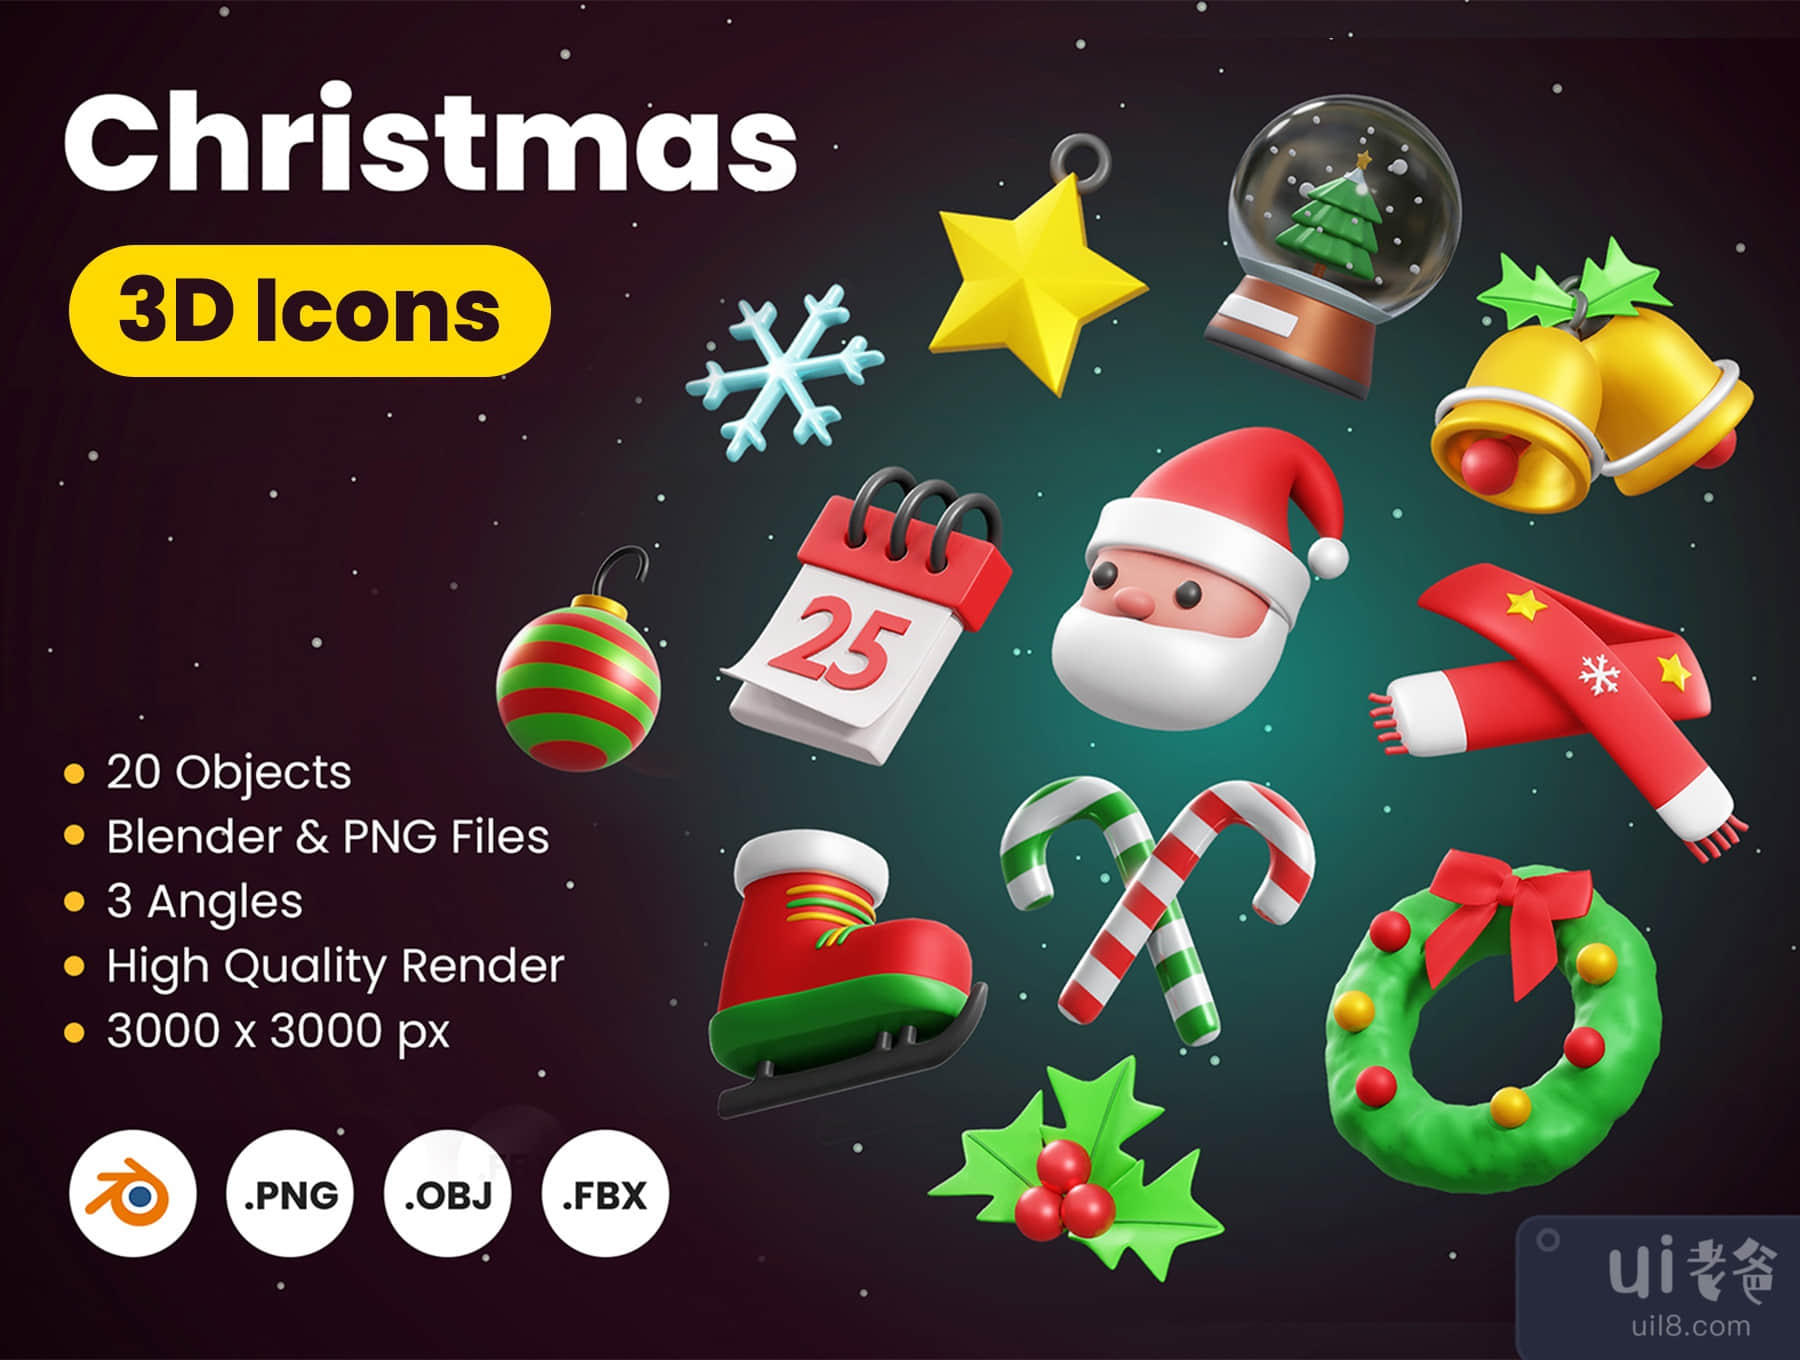 圣诞节3D图标 (Christmas 3D icons)插图